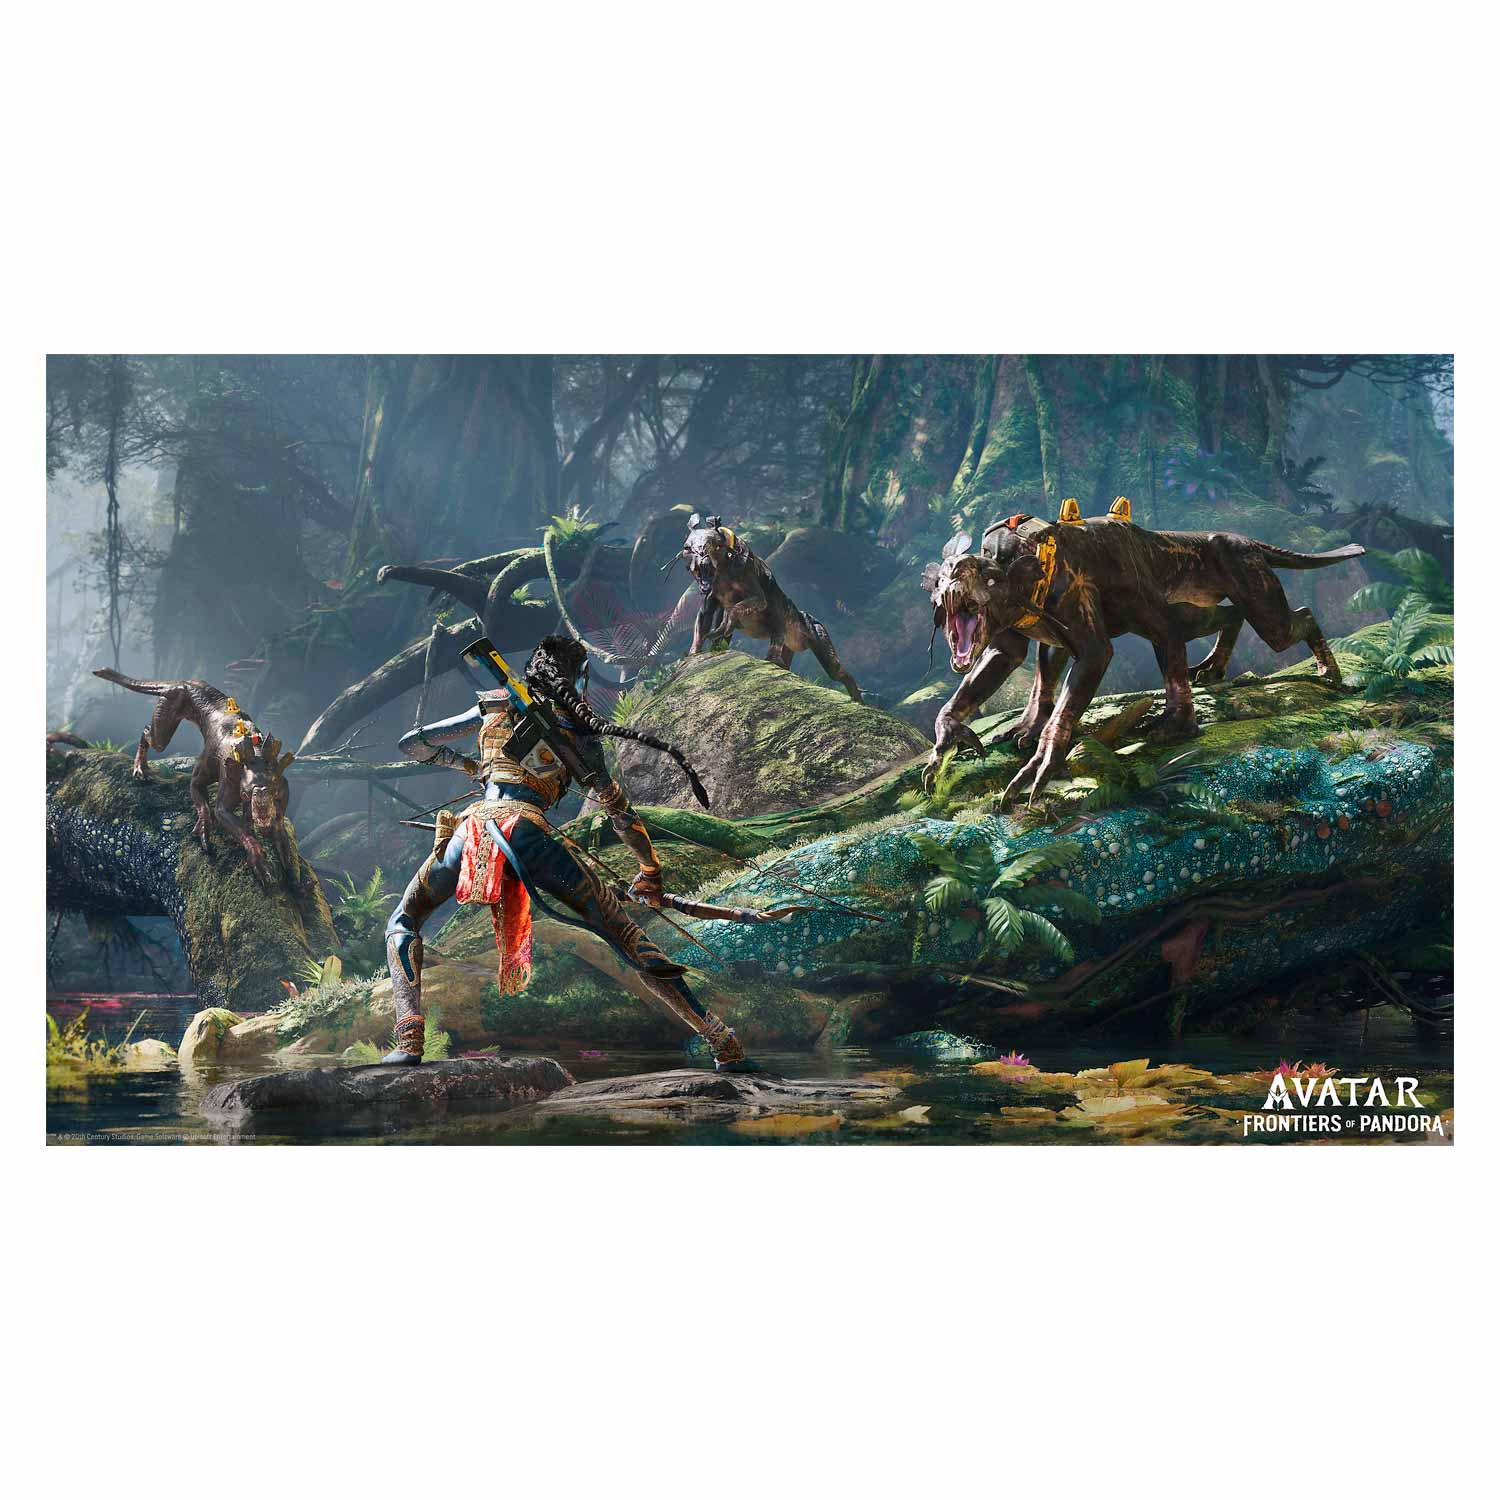 Jogo Avatar Frontiers of Pandora para PS5
